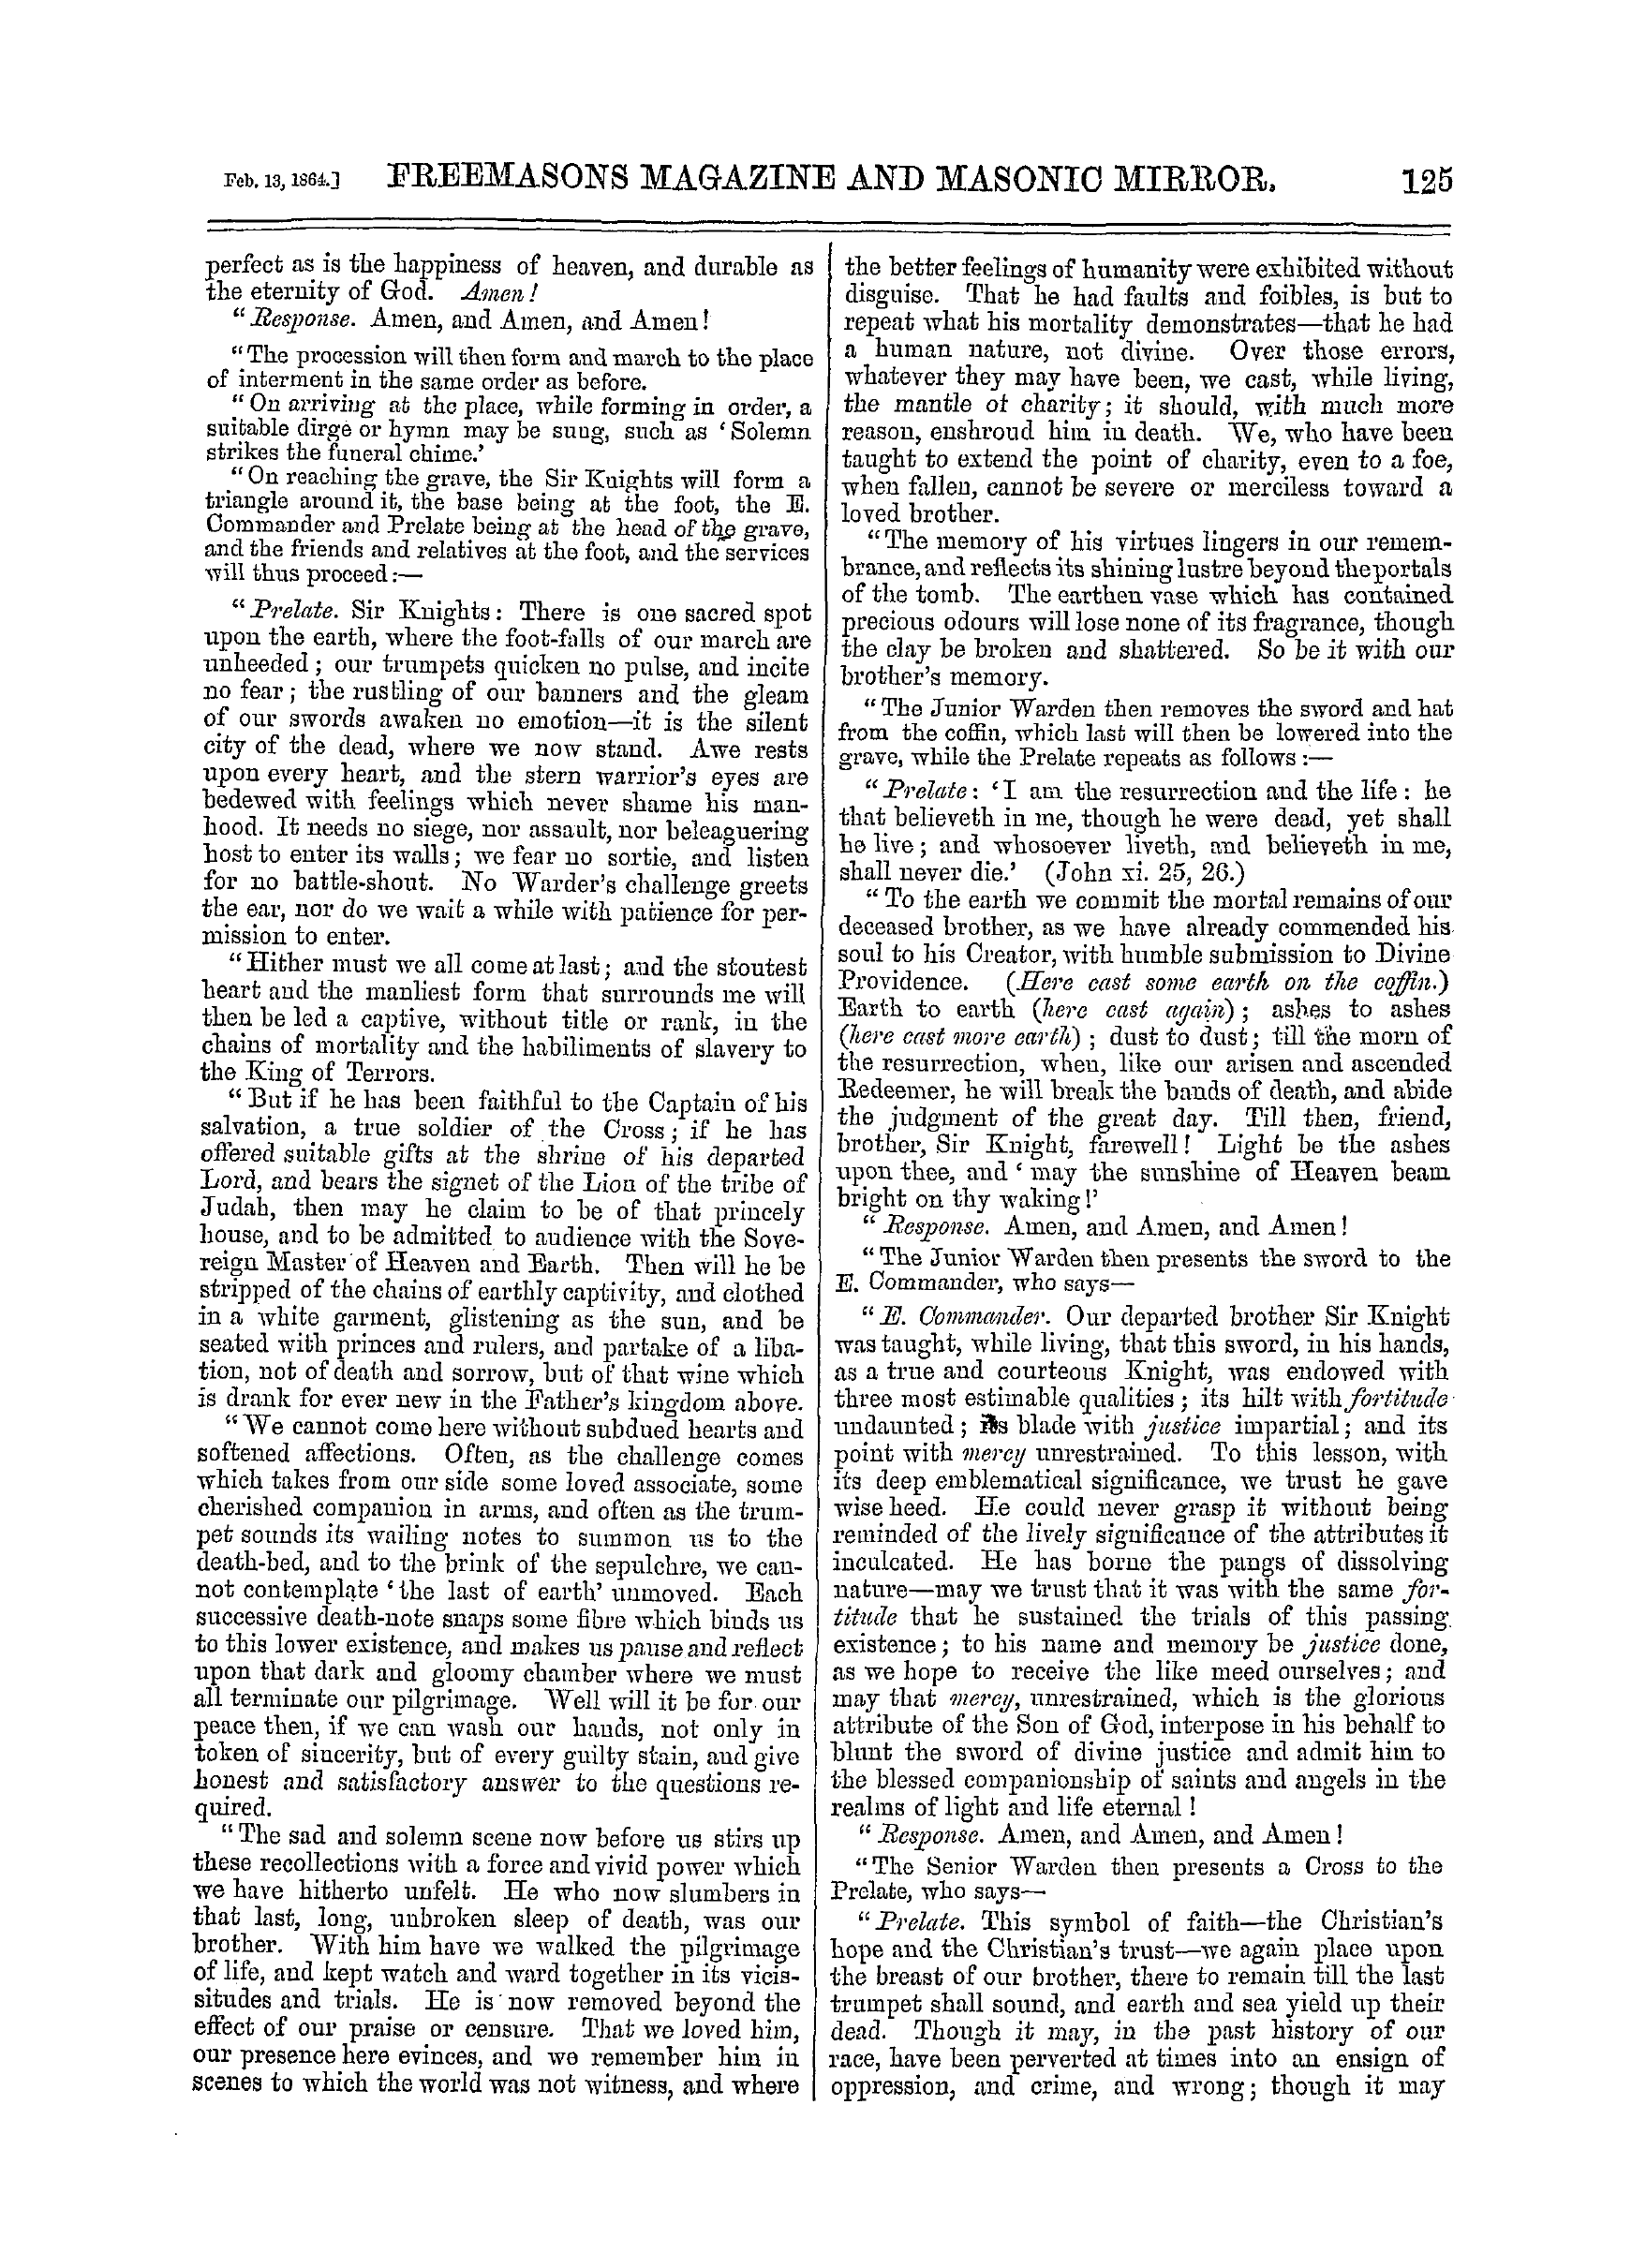 The Freemasons' Monthly Magazine: 1864-02-13: 9